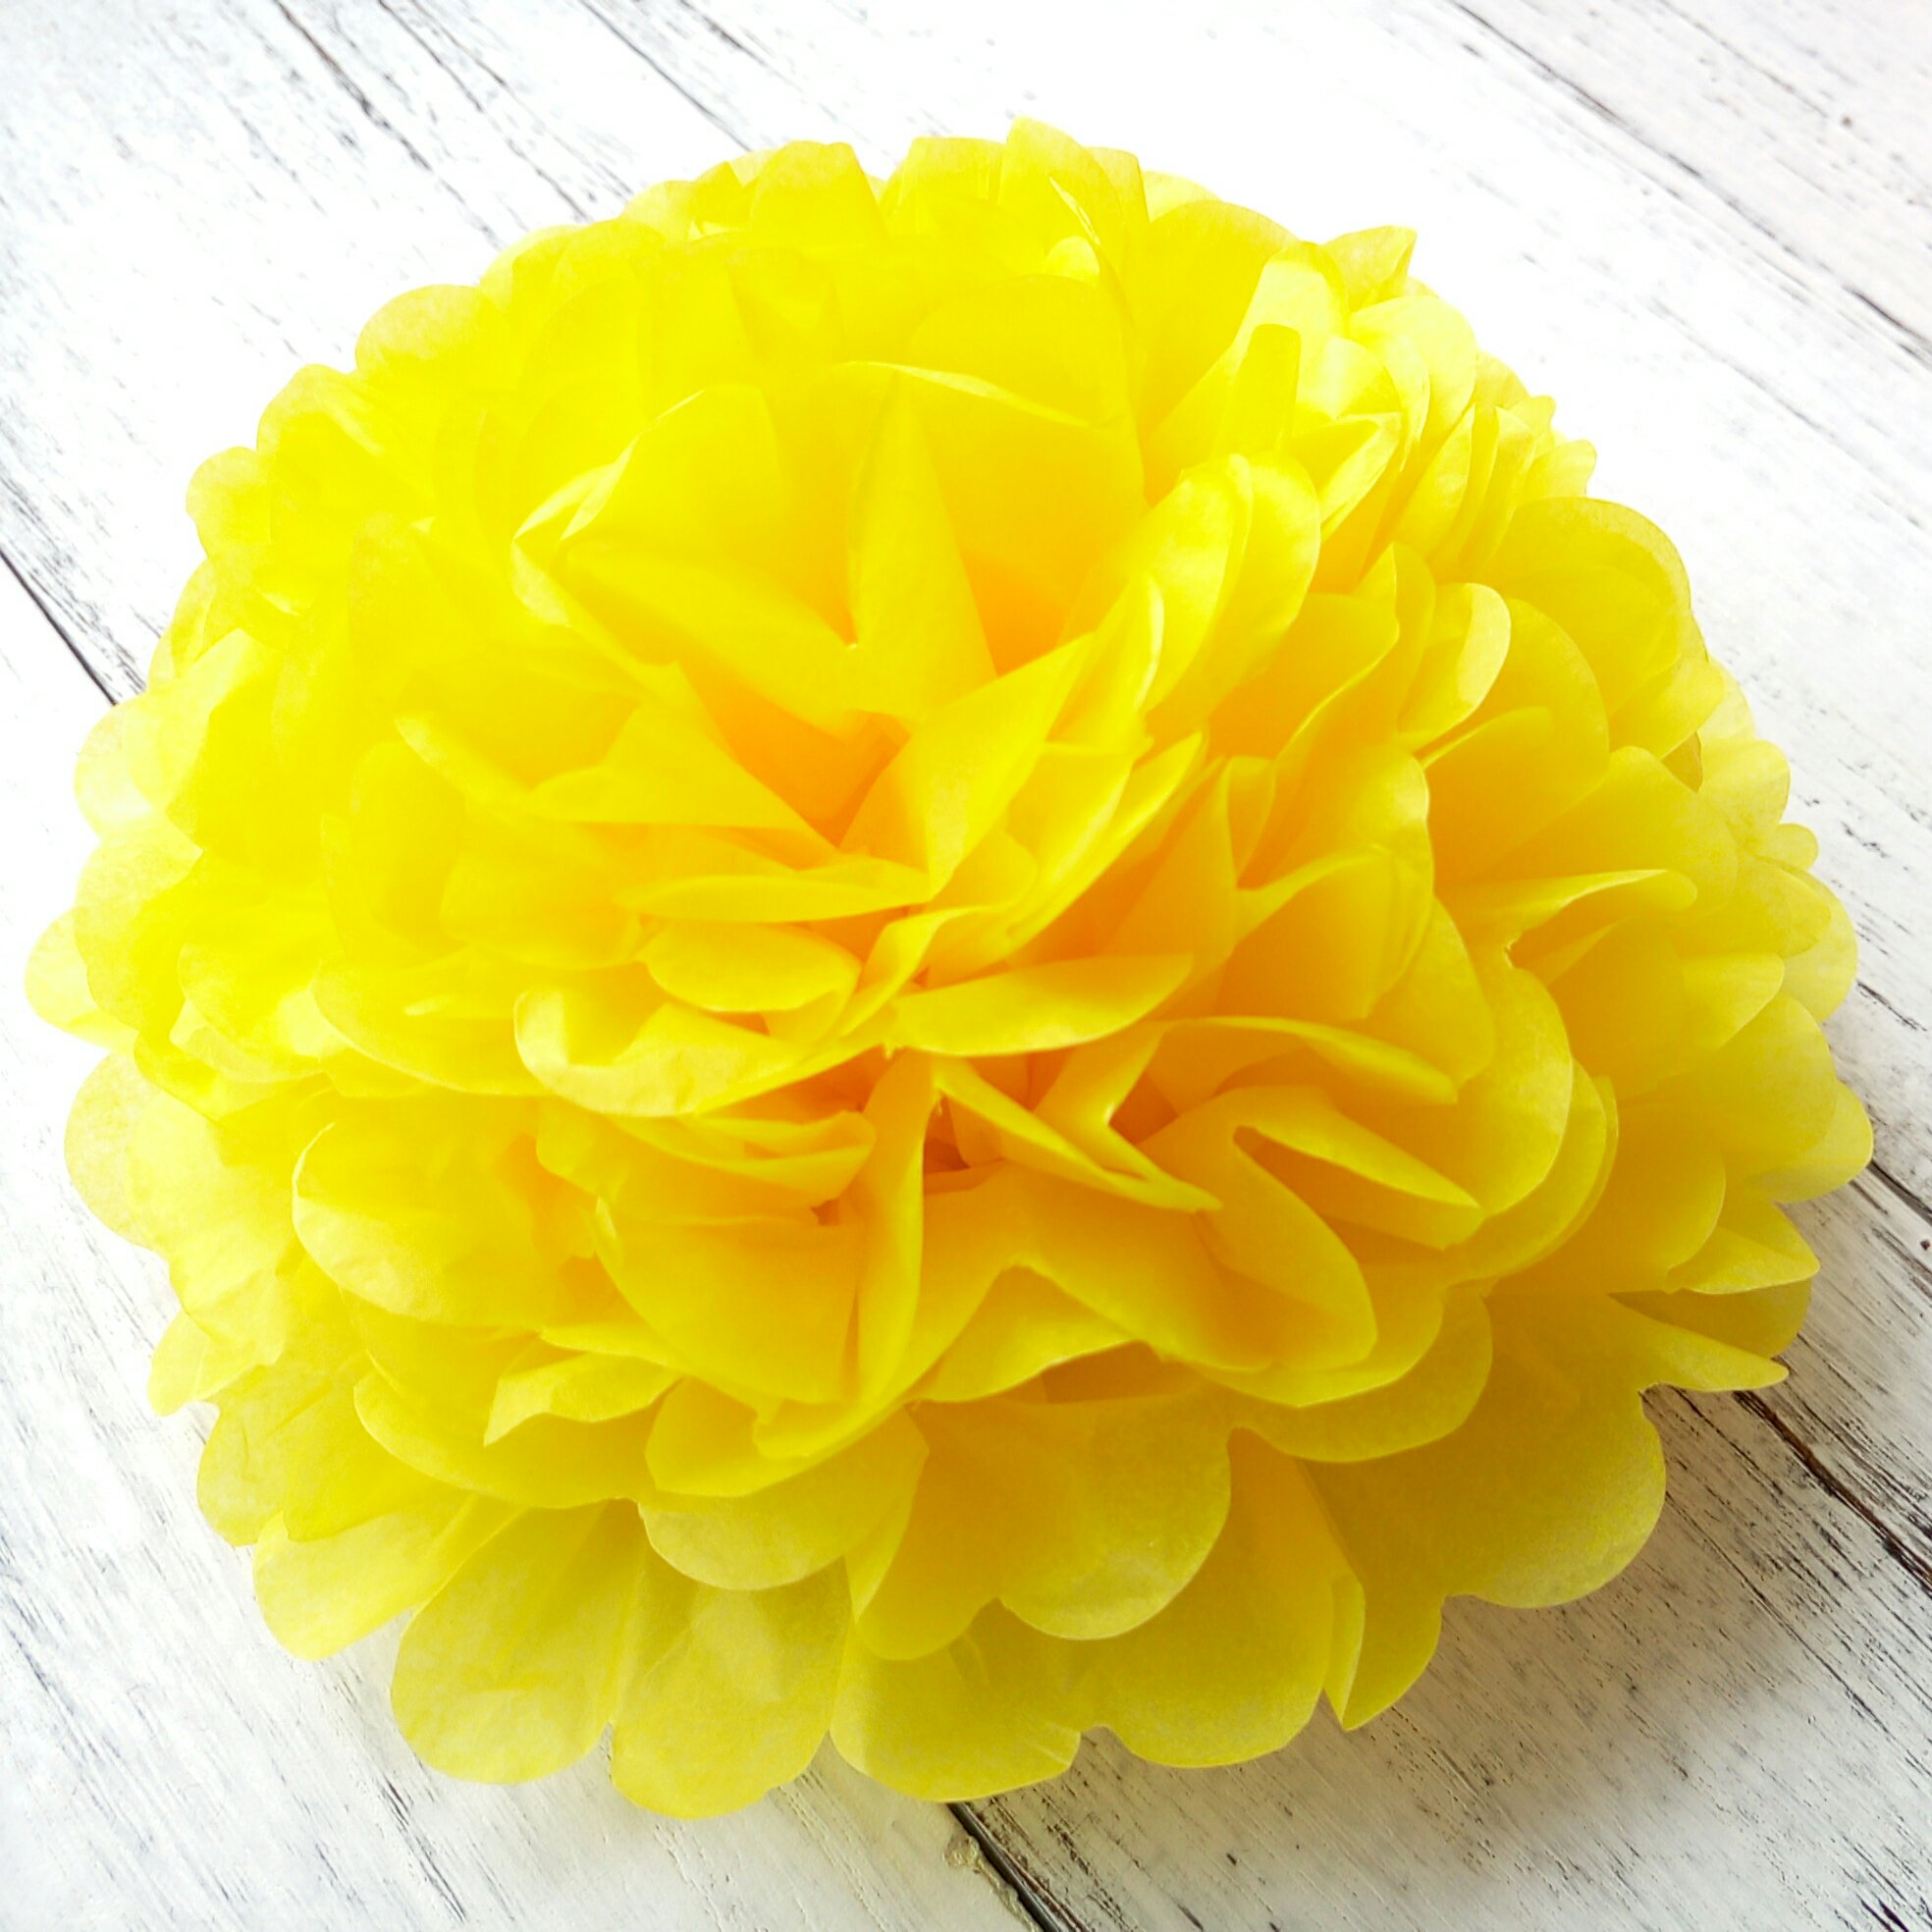 毛茛黄色薄纸粉扑球、大绒球、新娘送礼装饰品